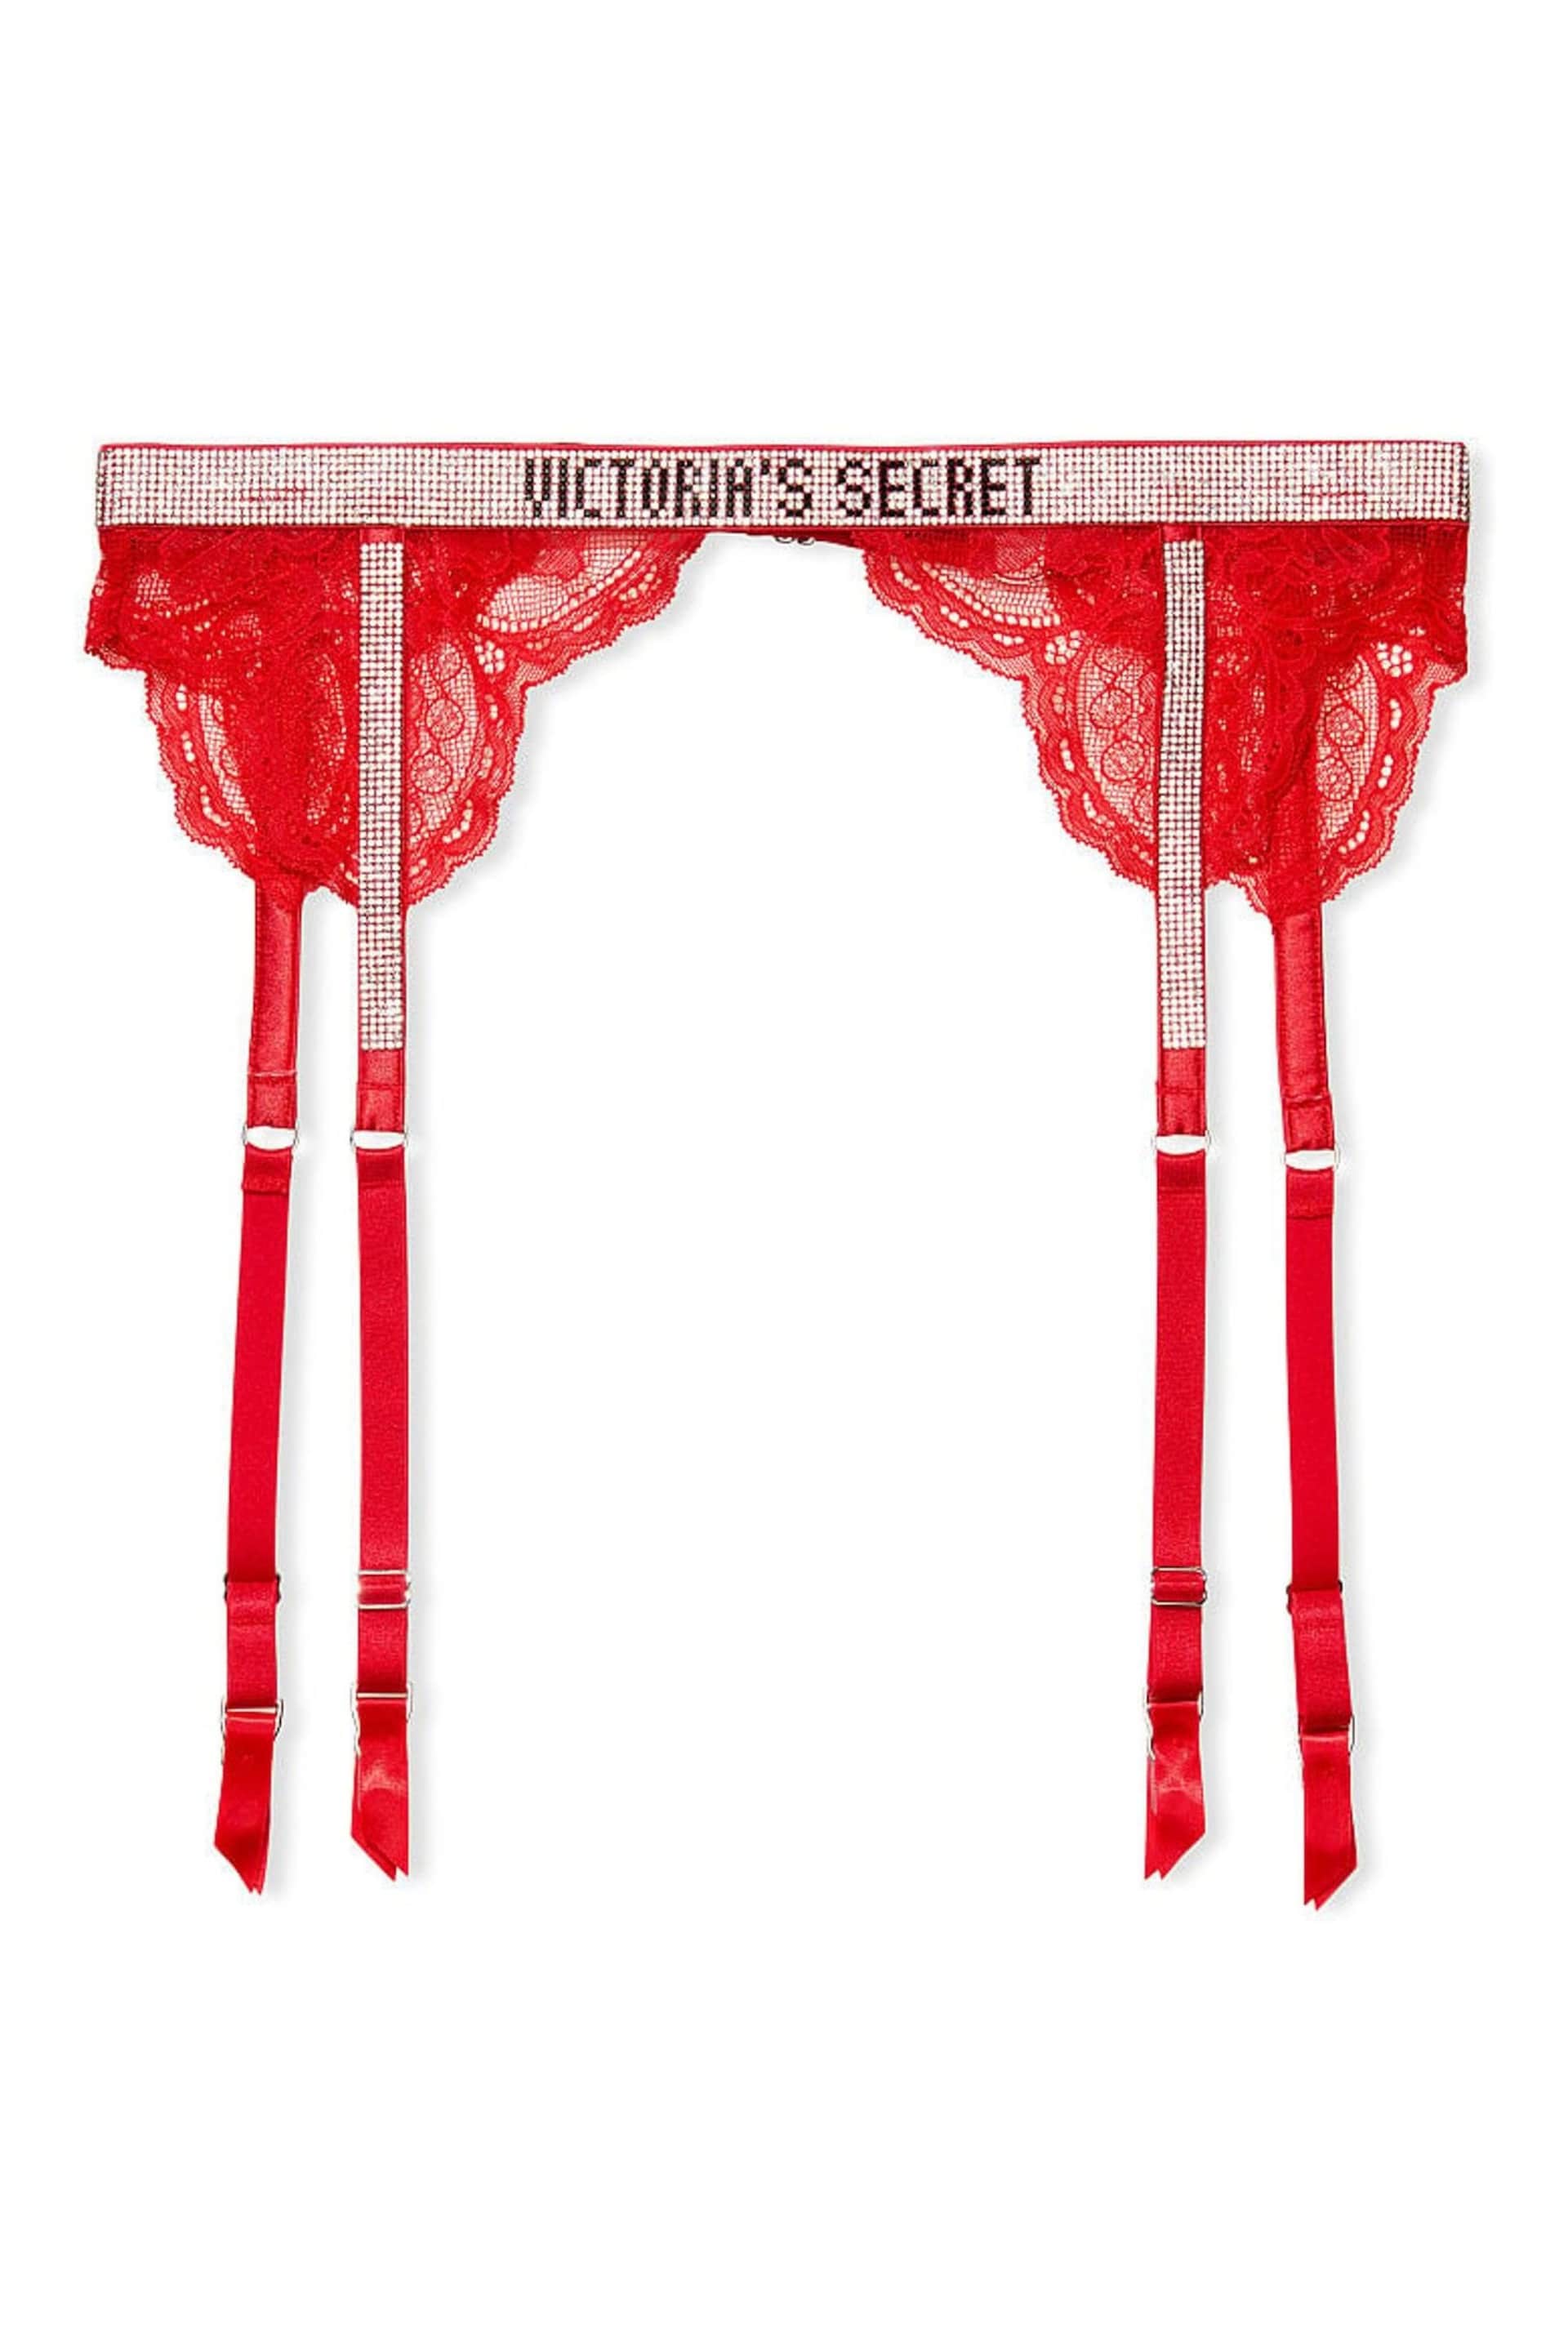 Victoria's Secret Lipstick Red Lace Shine Strap Suspenders - Image 4 of 4